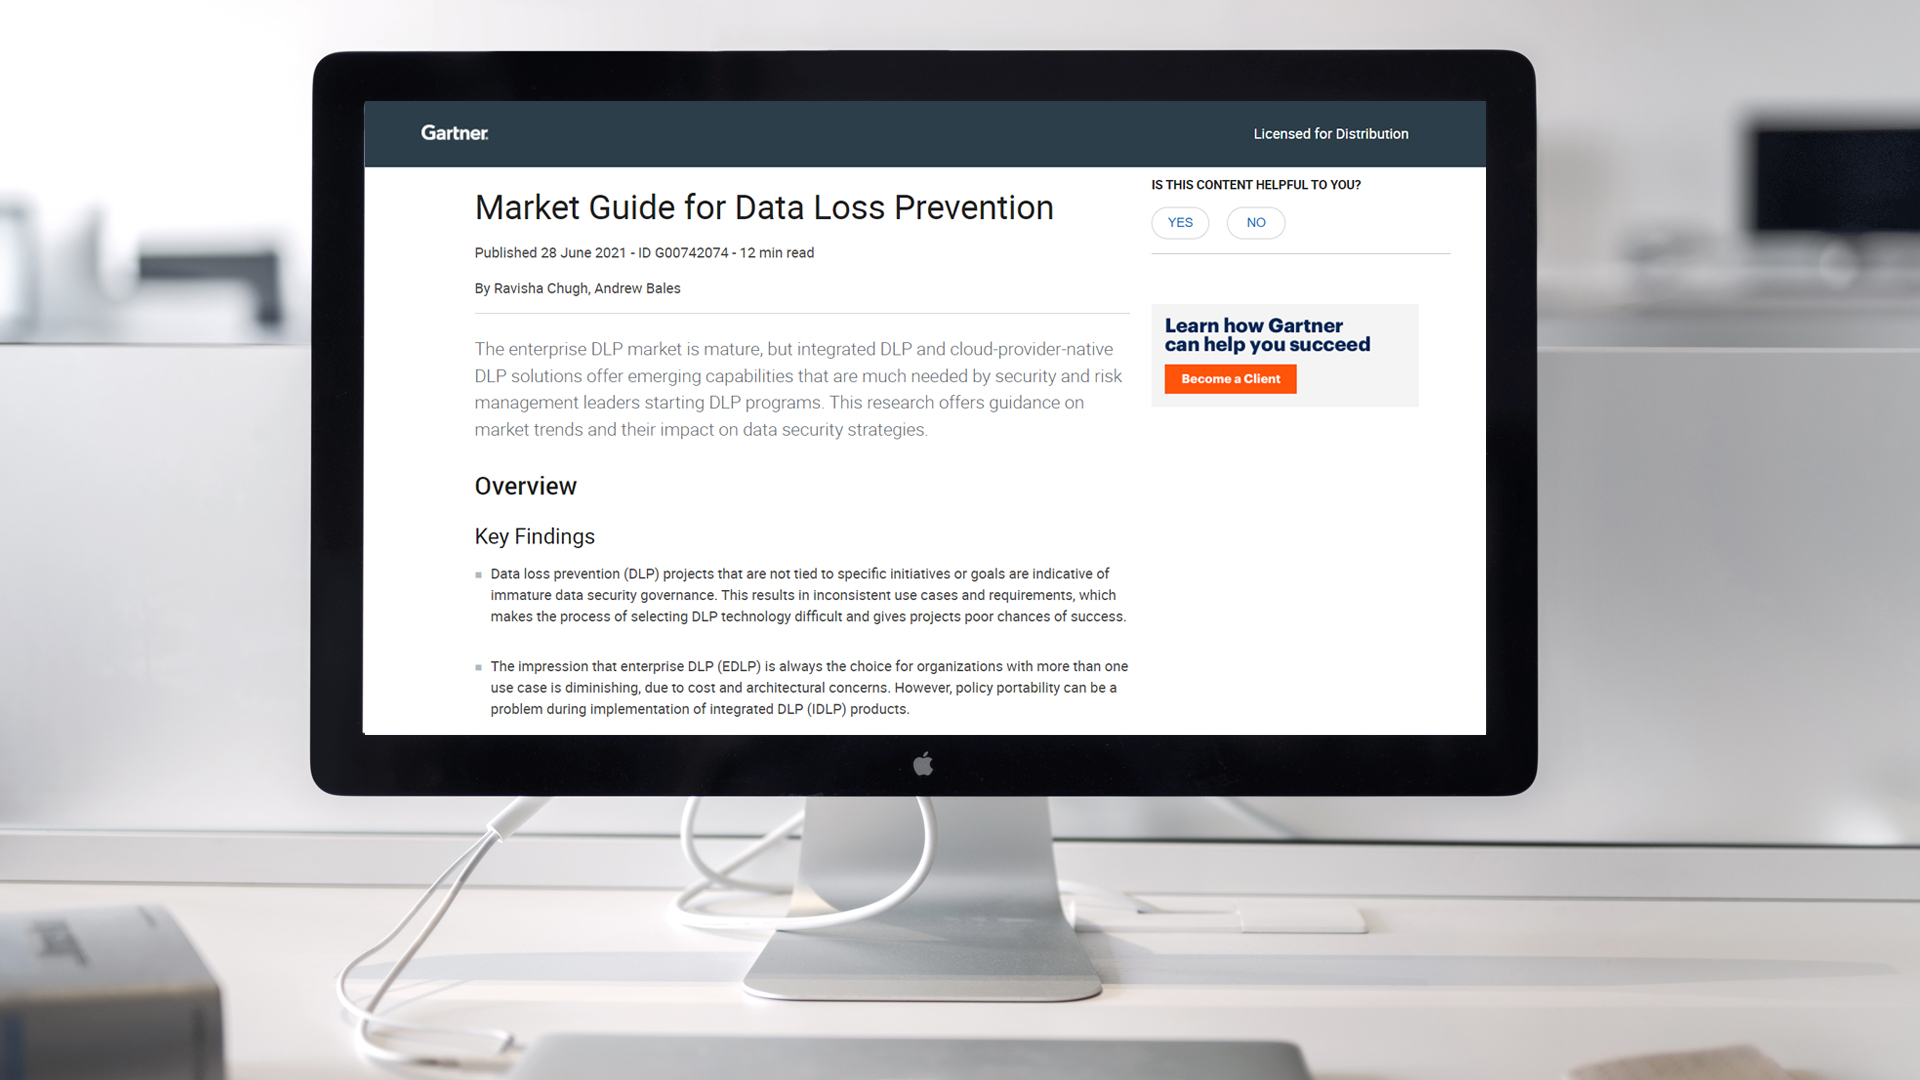 Report: 2021 Data Loss Prevention Market Guide by Gartner